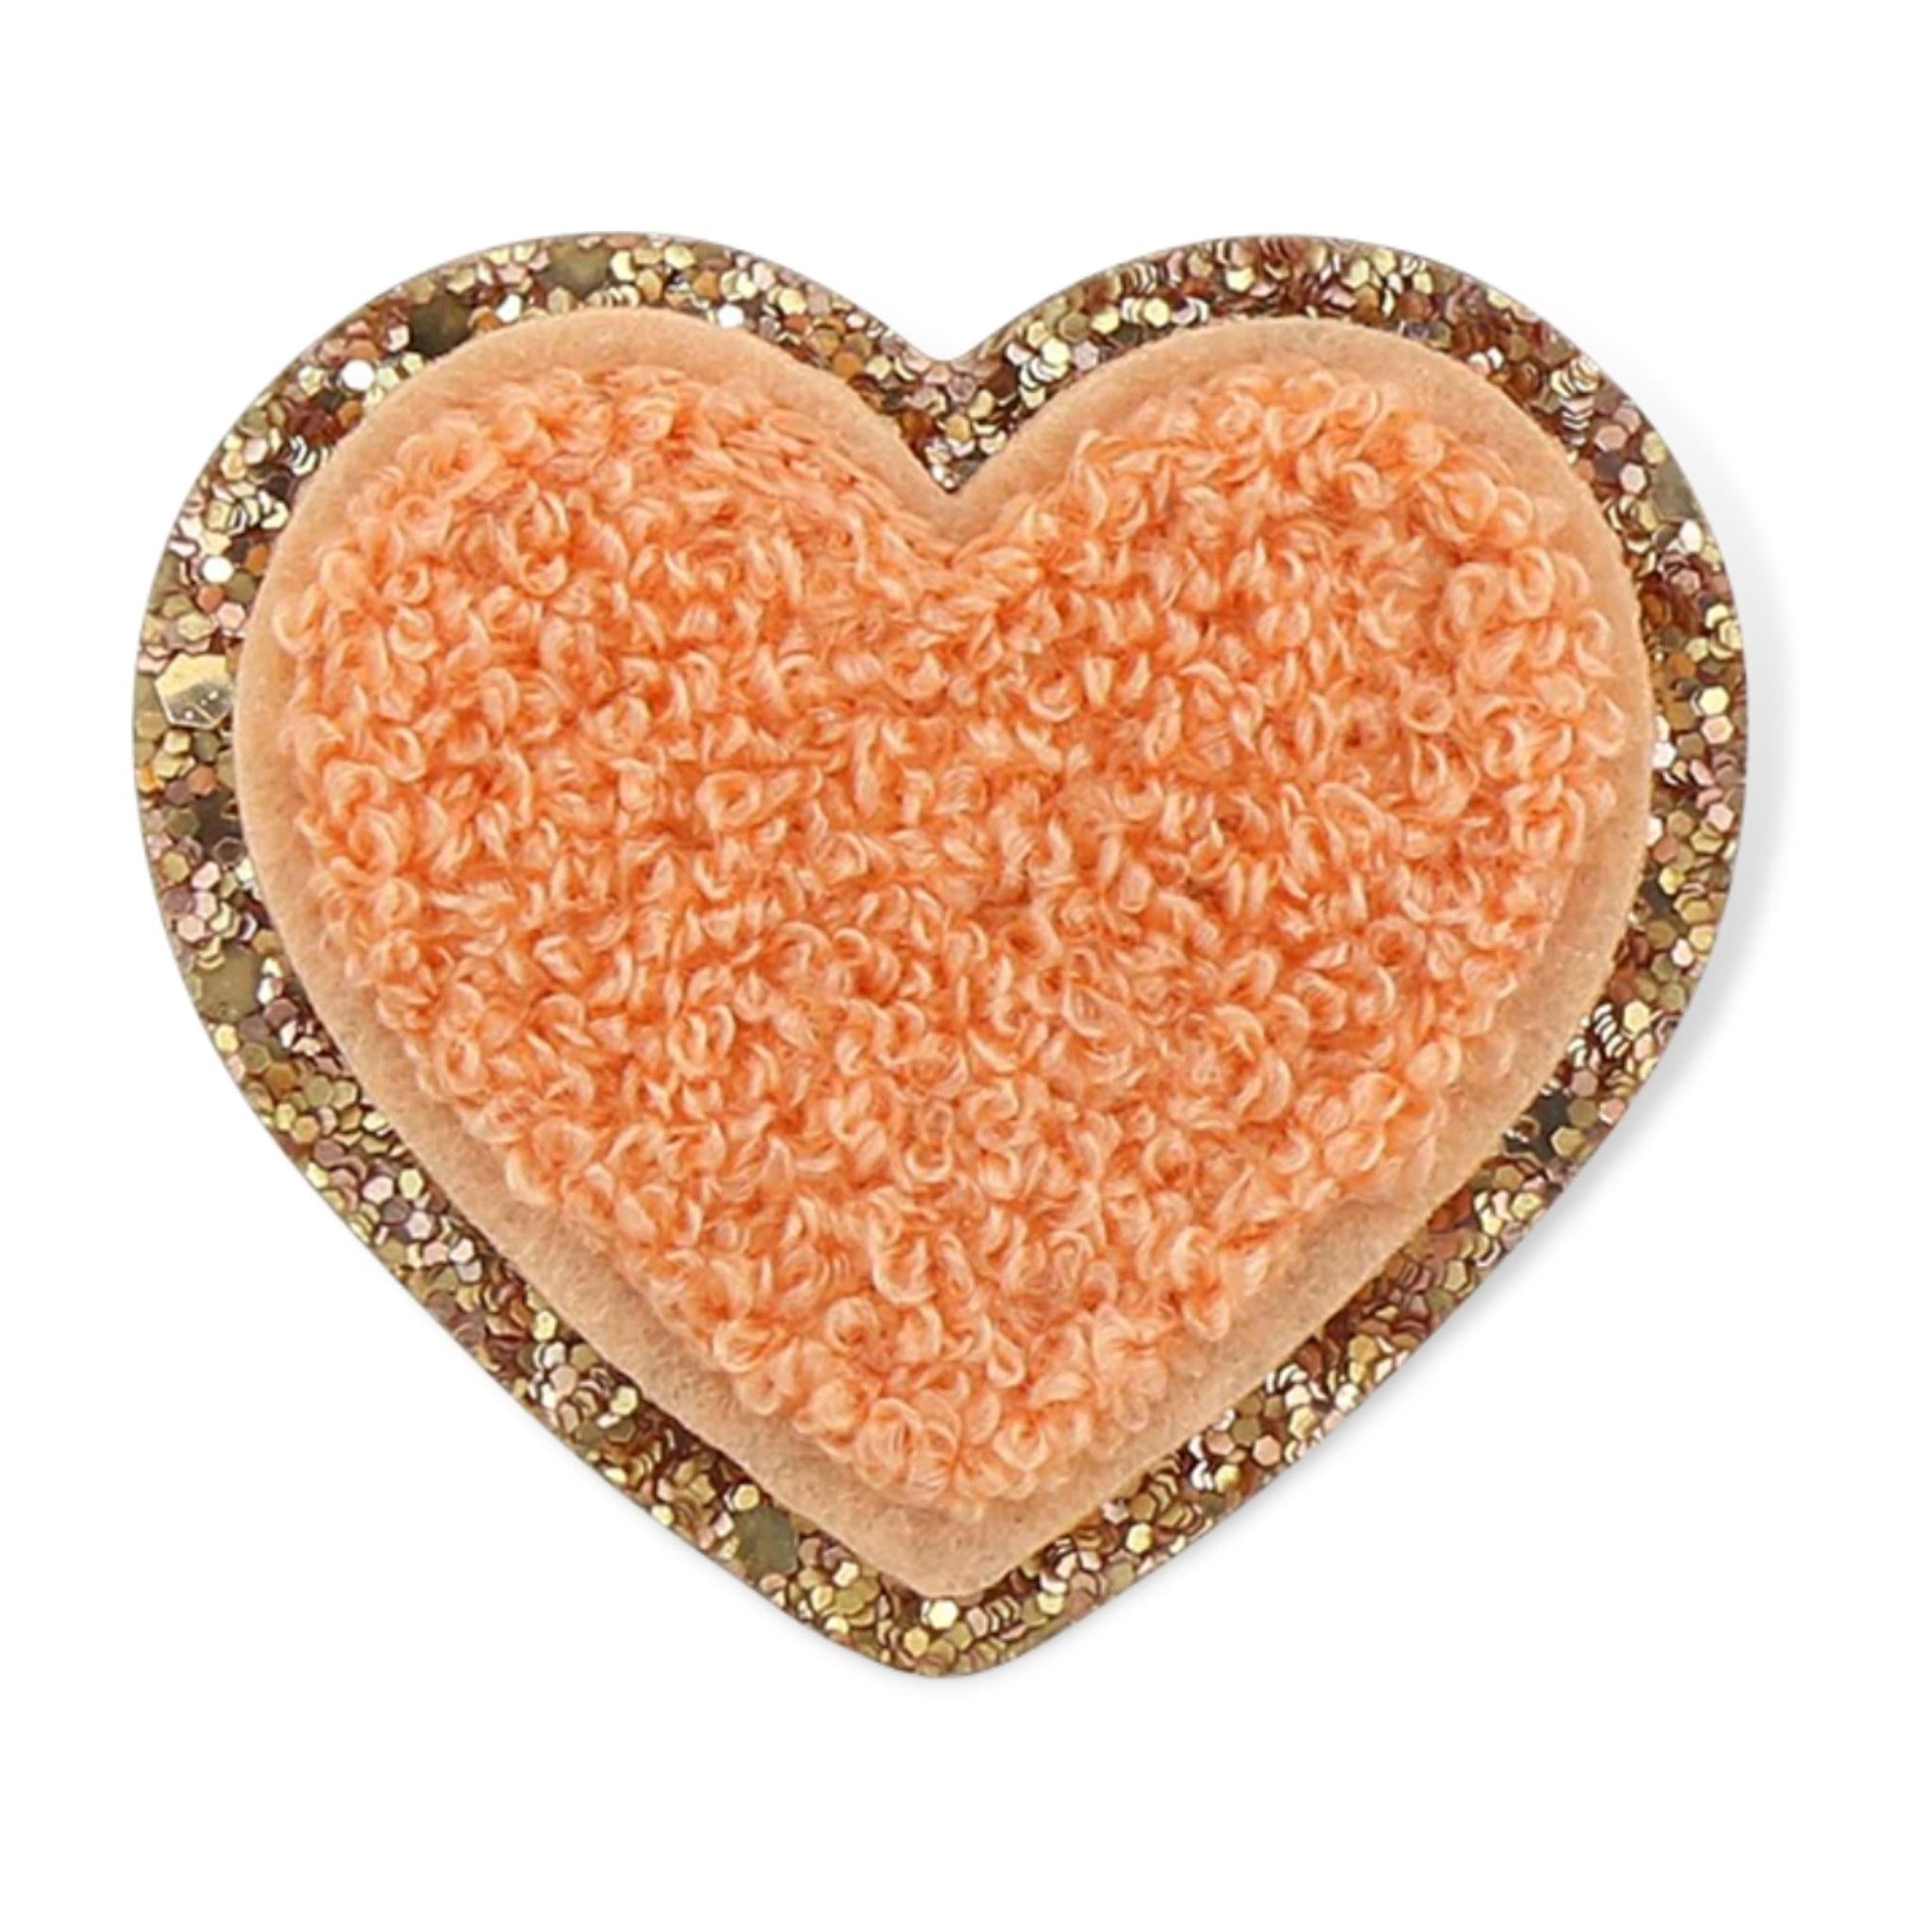 SCLN Peach Glitter Heart Patch - a Spirit Animal - Patch active Jun 2022 Clover gifts